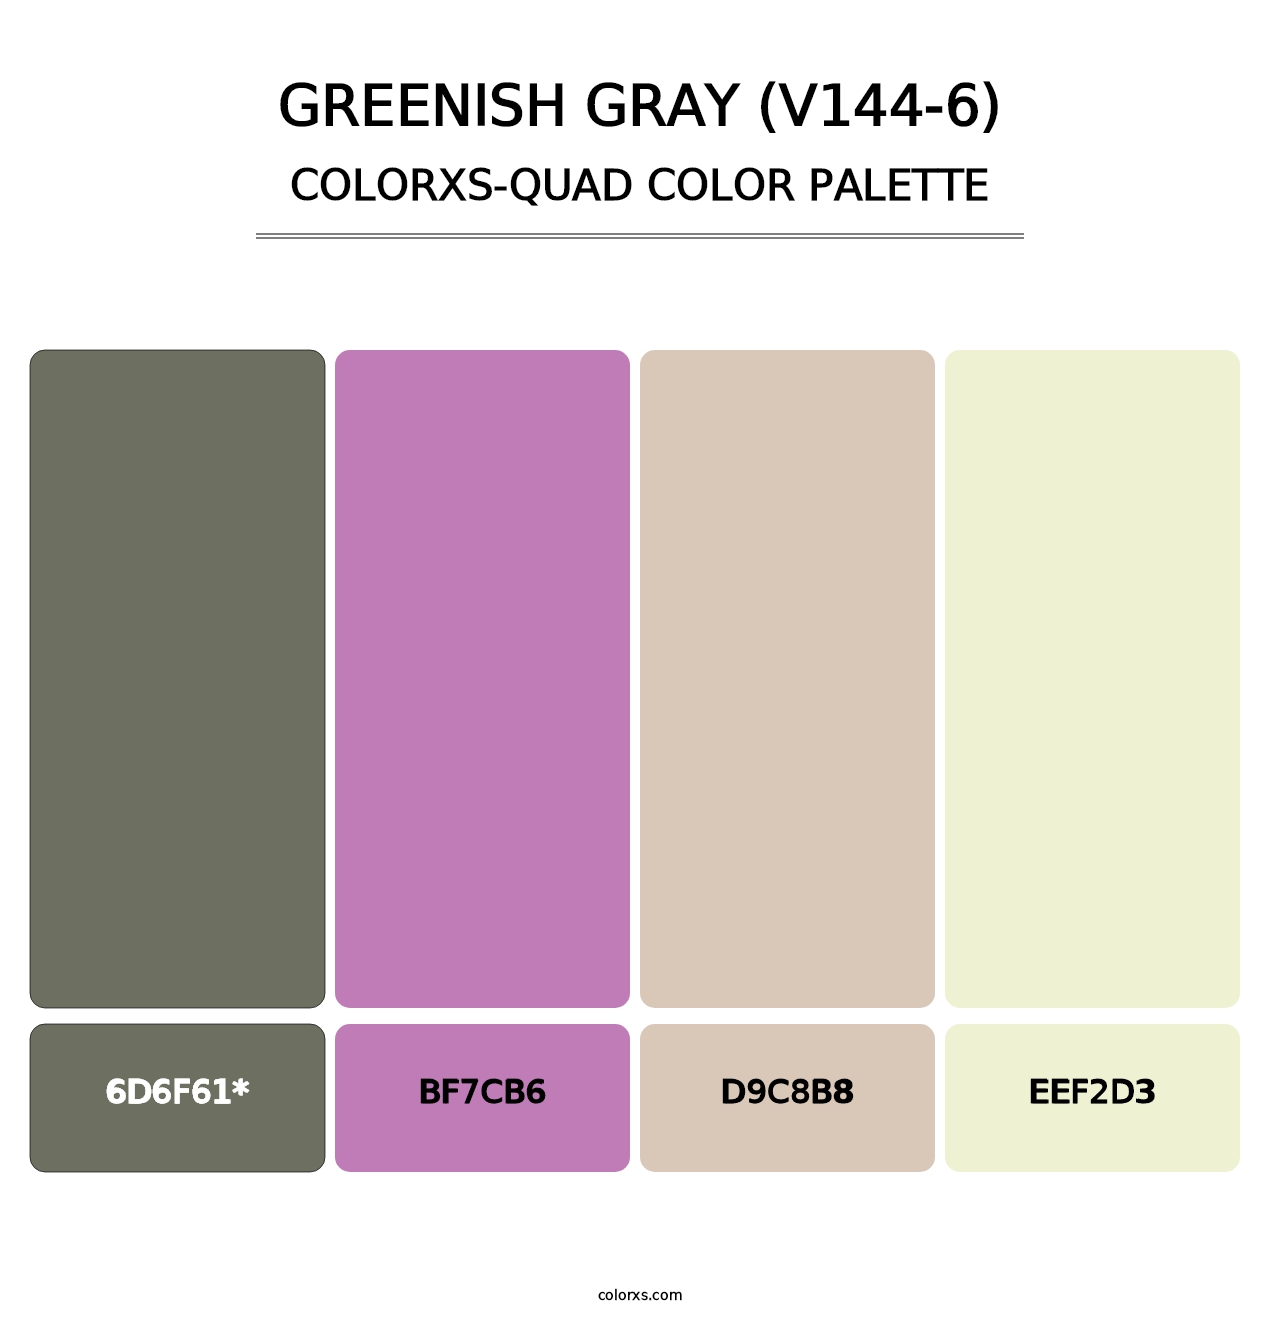 Greenish Gray (V144-6) - Colorxs Quad Palette